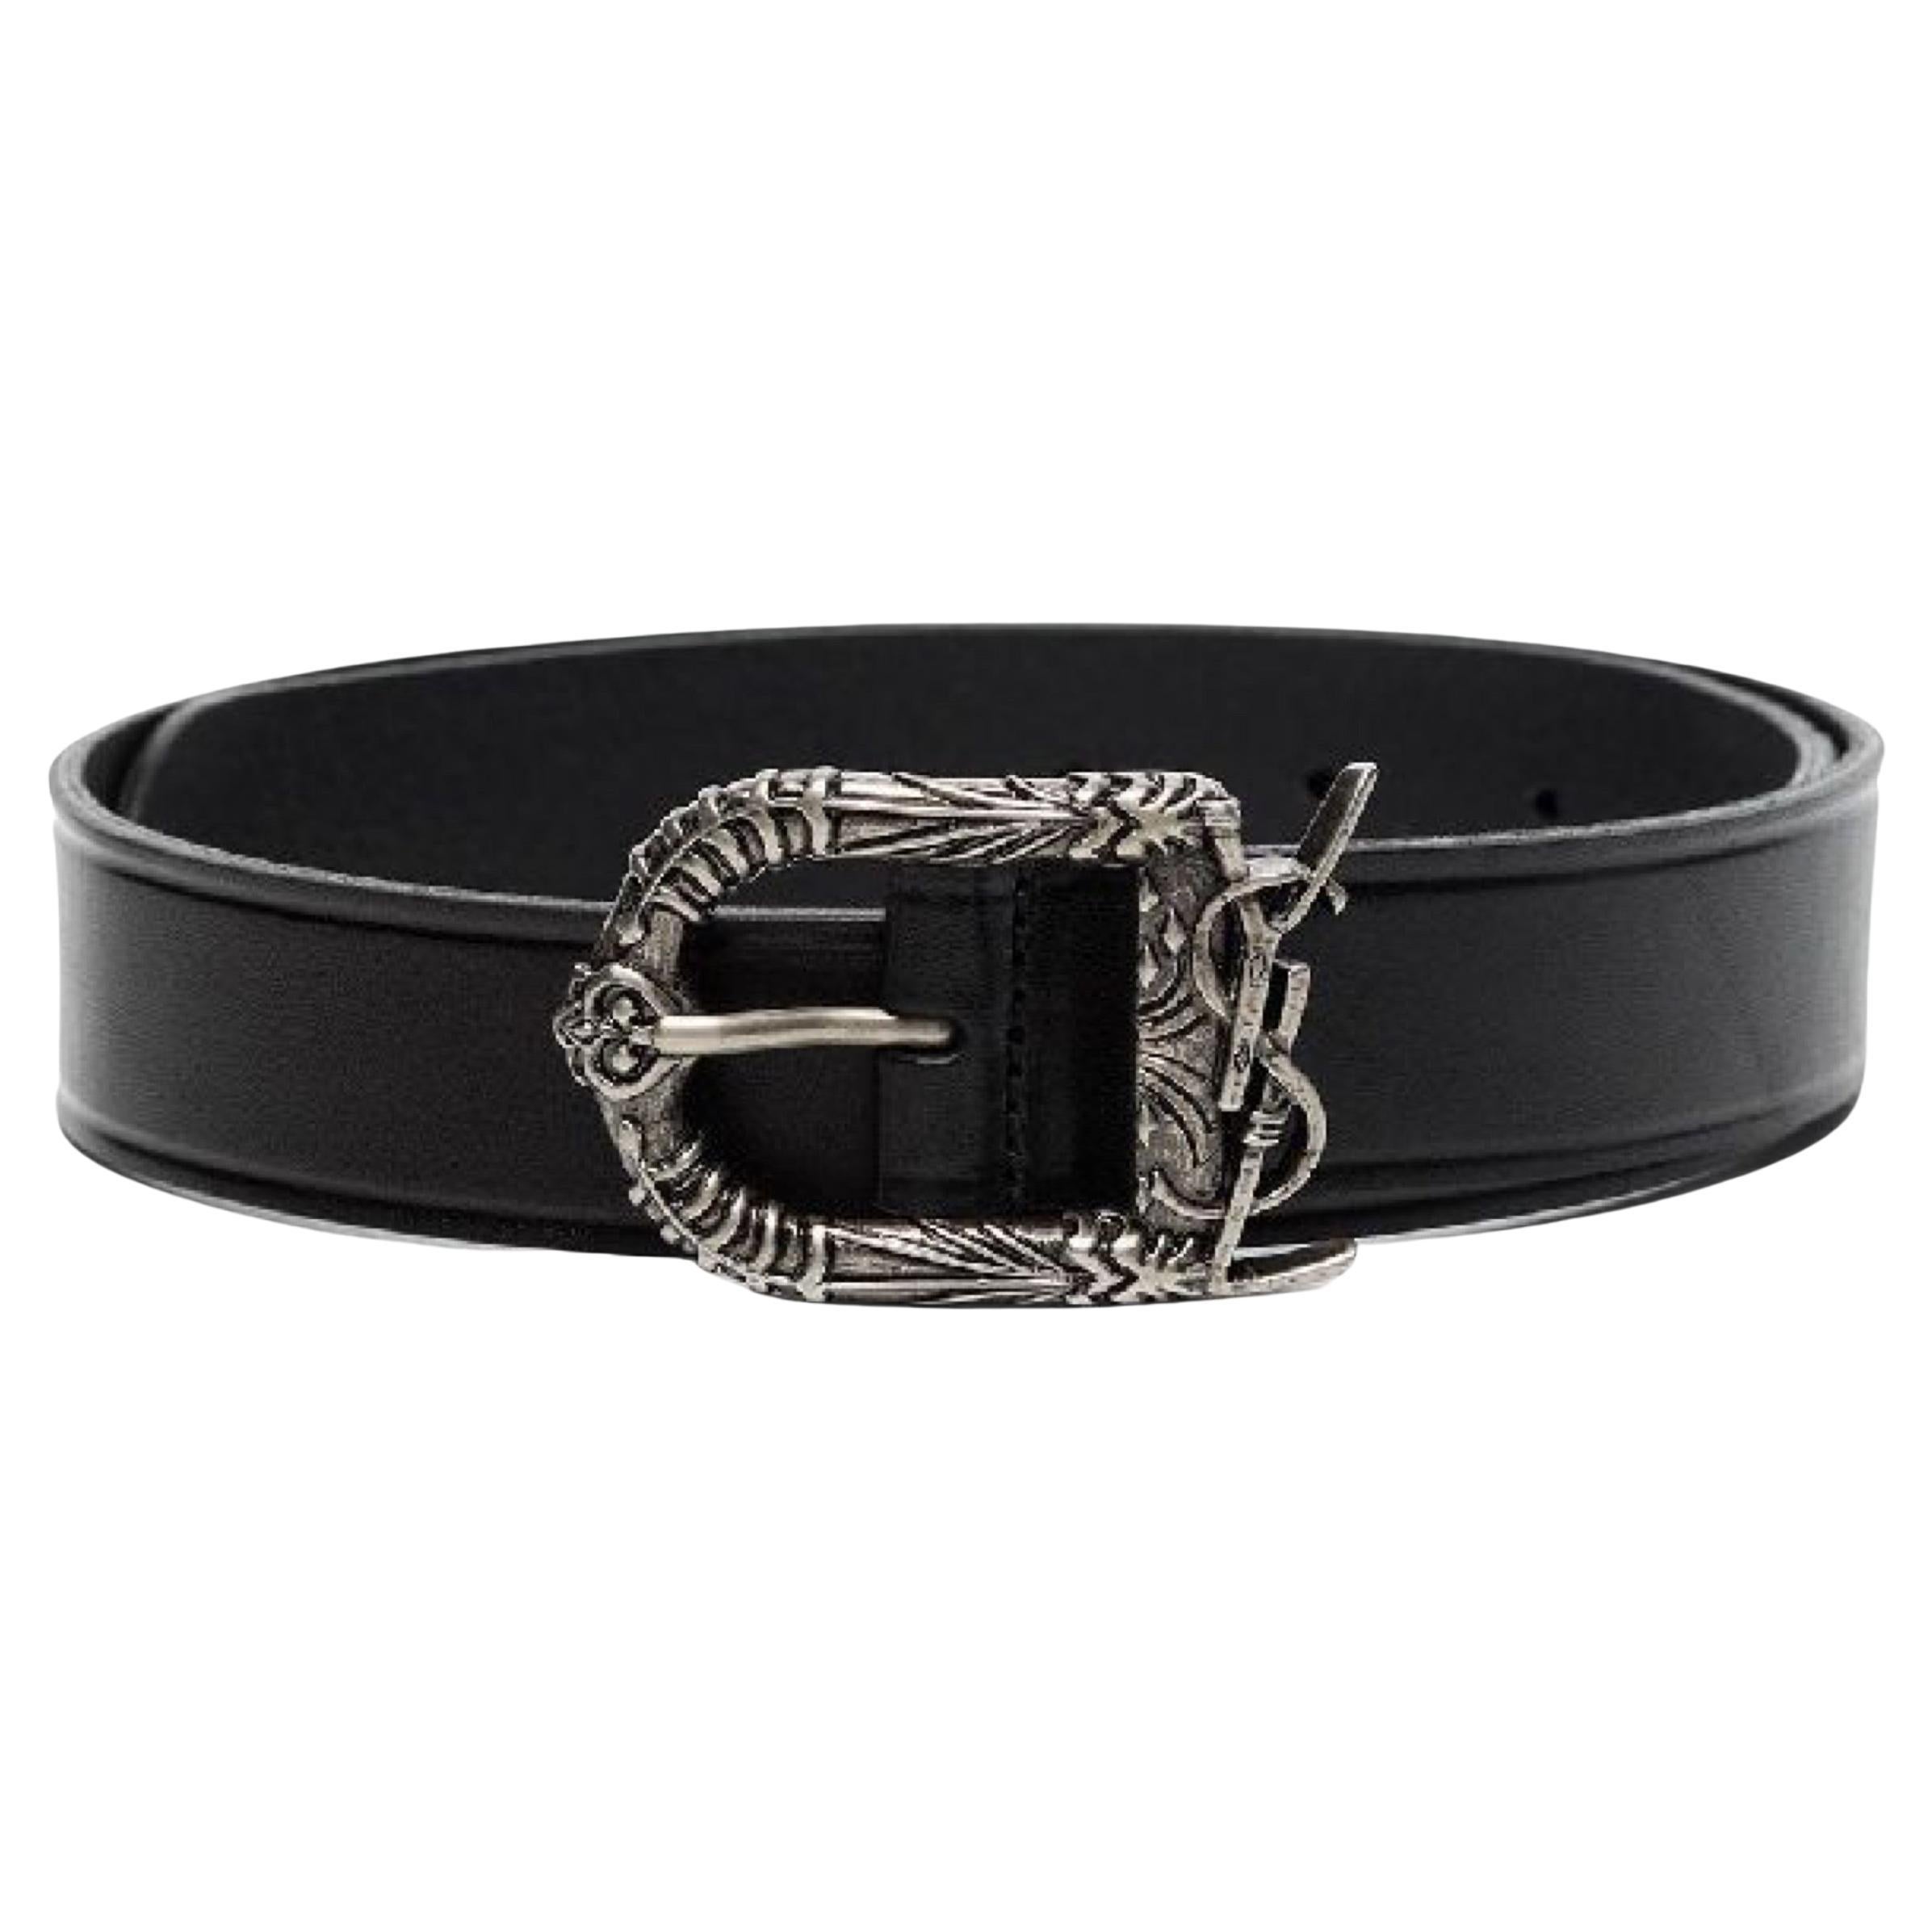 NEW Saint Laurent Black Decorative Buckle Leather Belt Size 28 US 70 EU For Sale